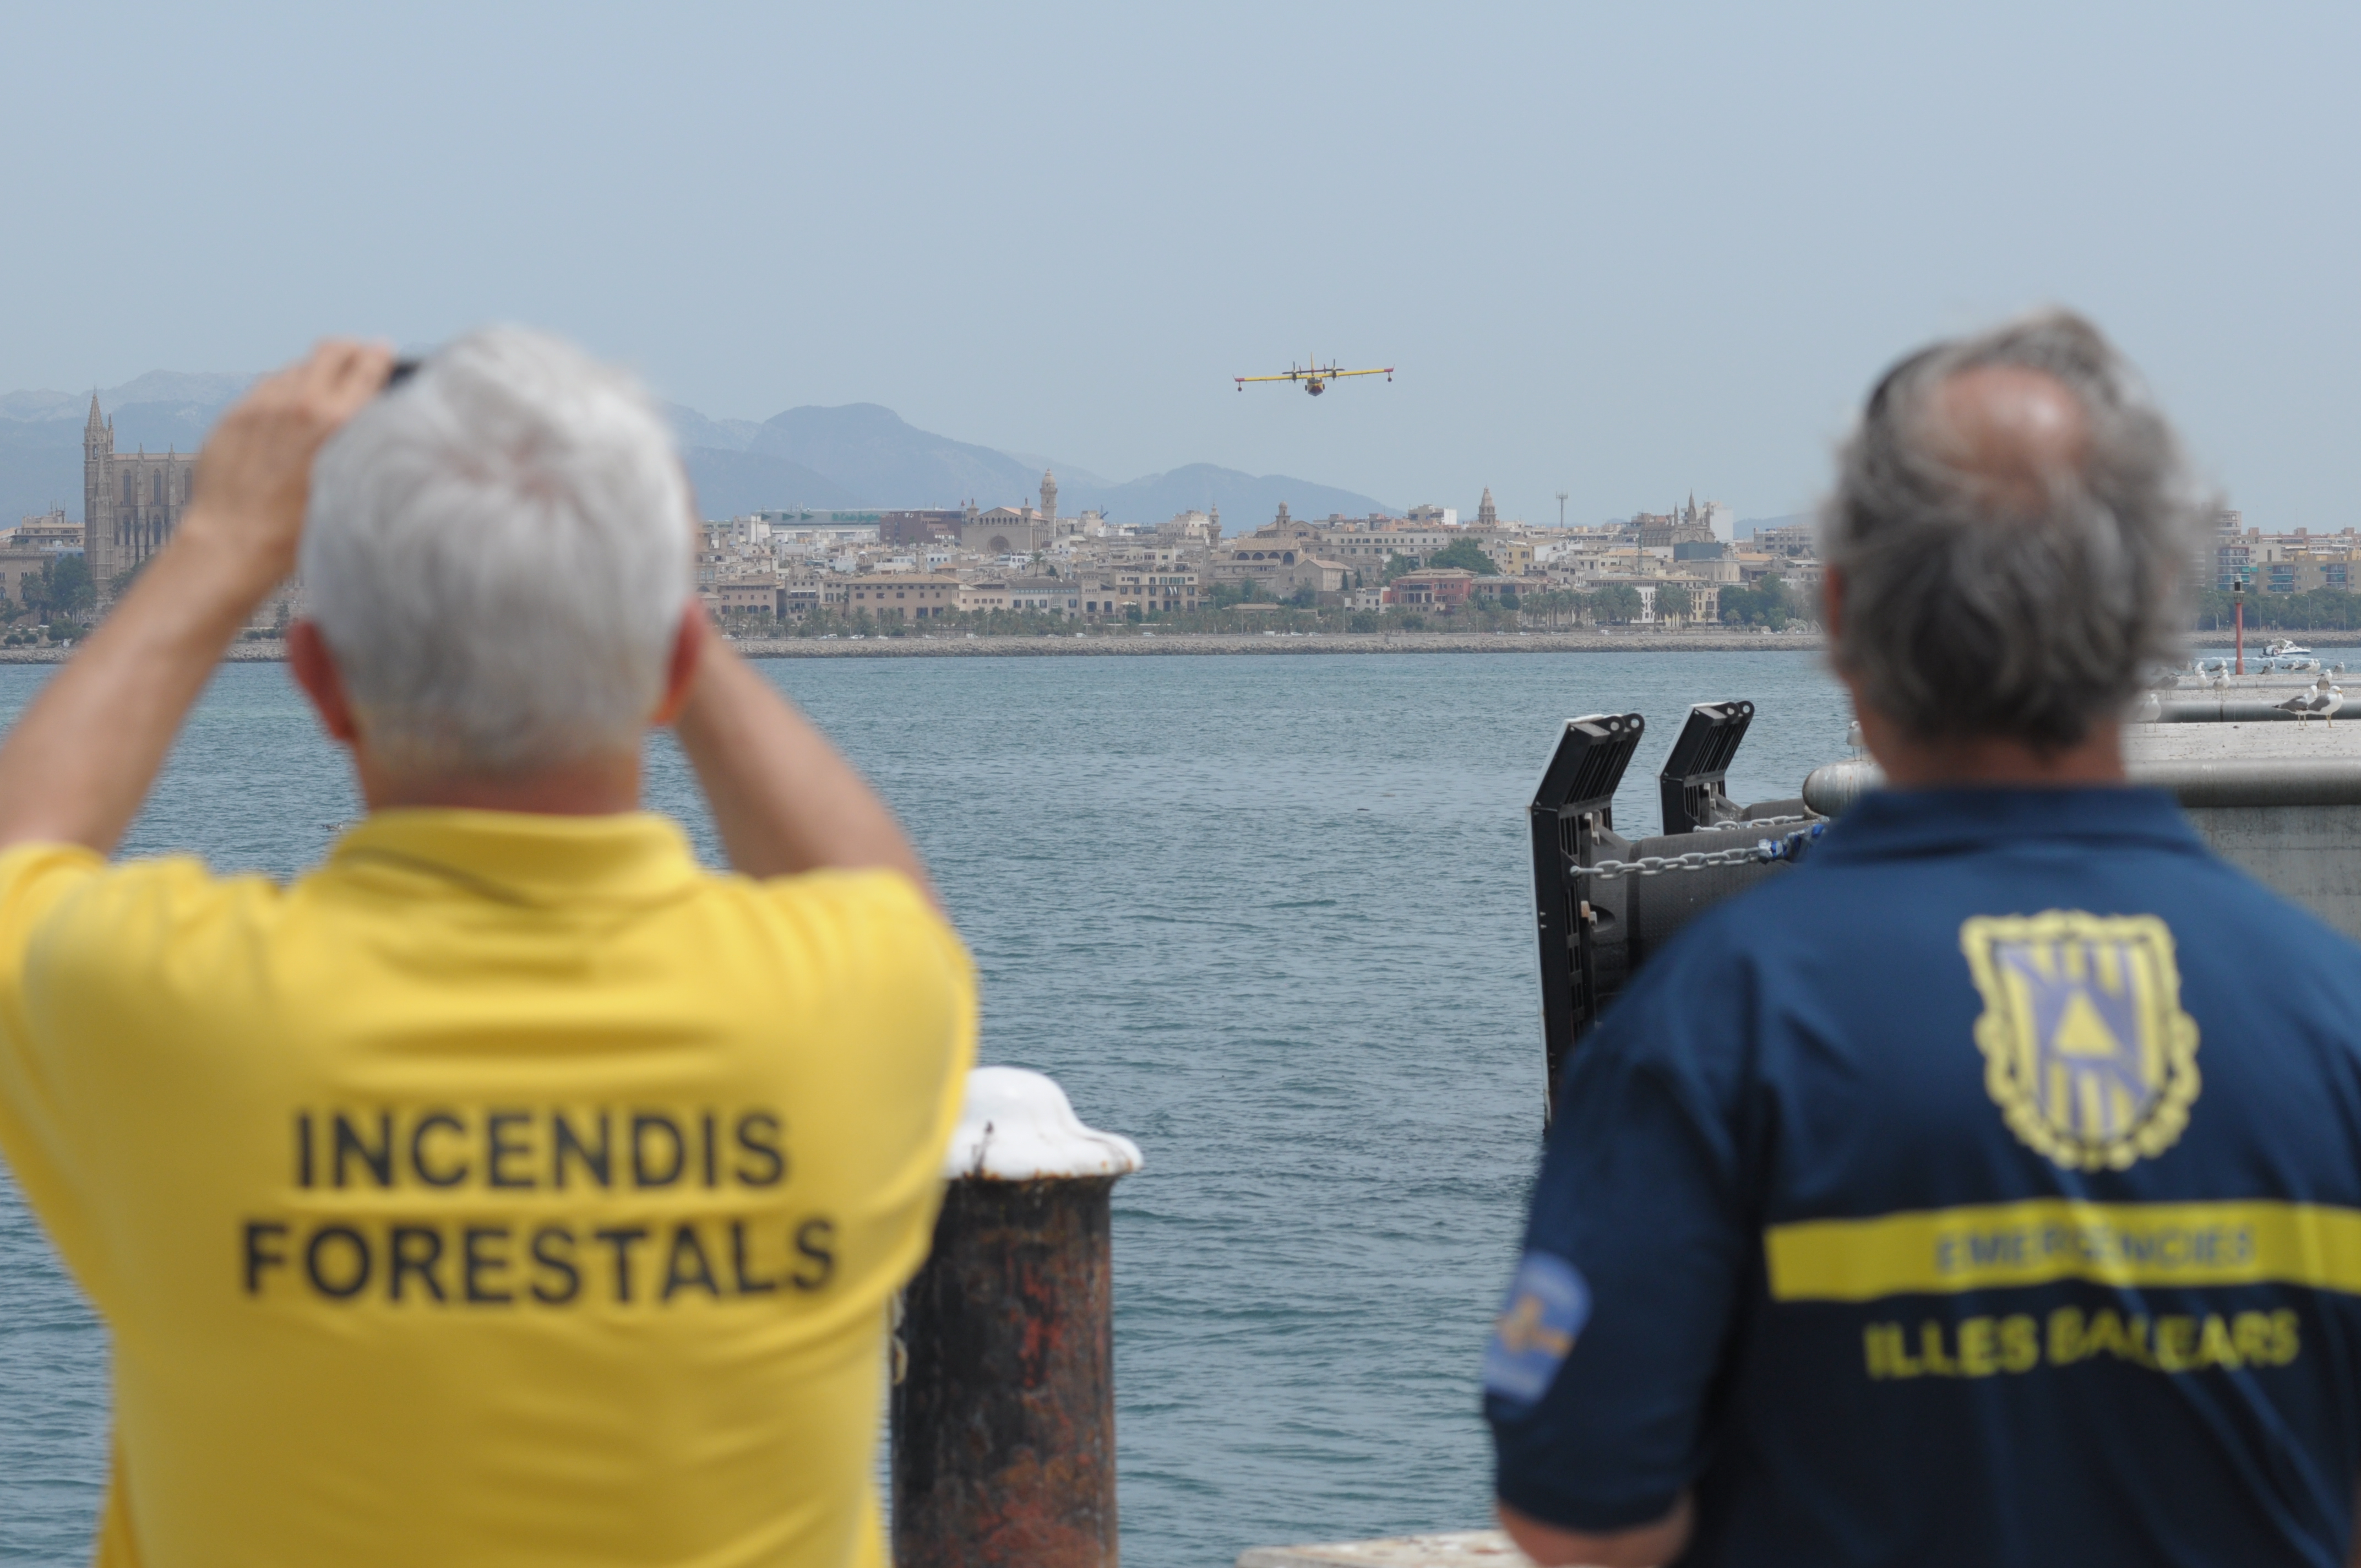 Übung der Wasserlandung von Amphibienflugzeugen im Hafen von Palma